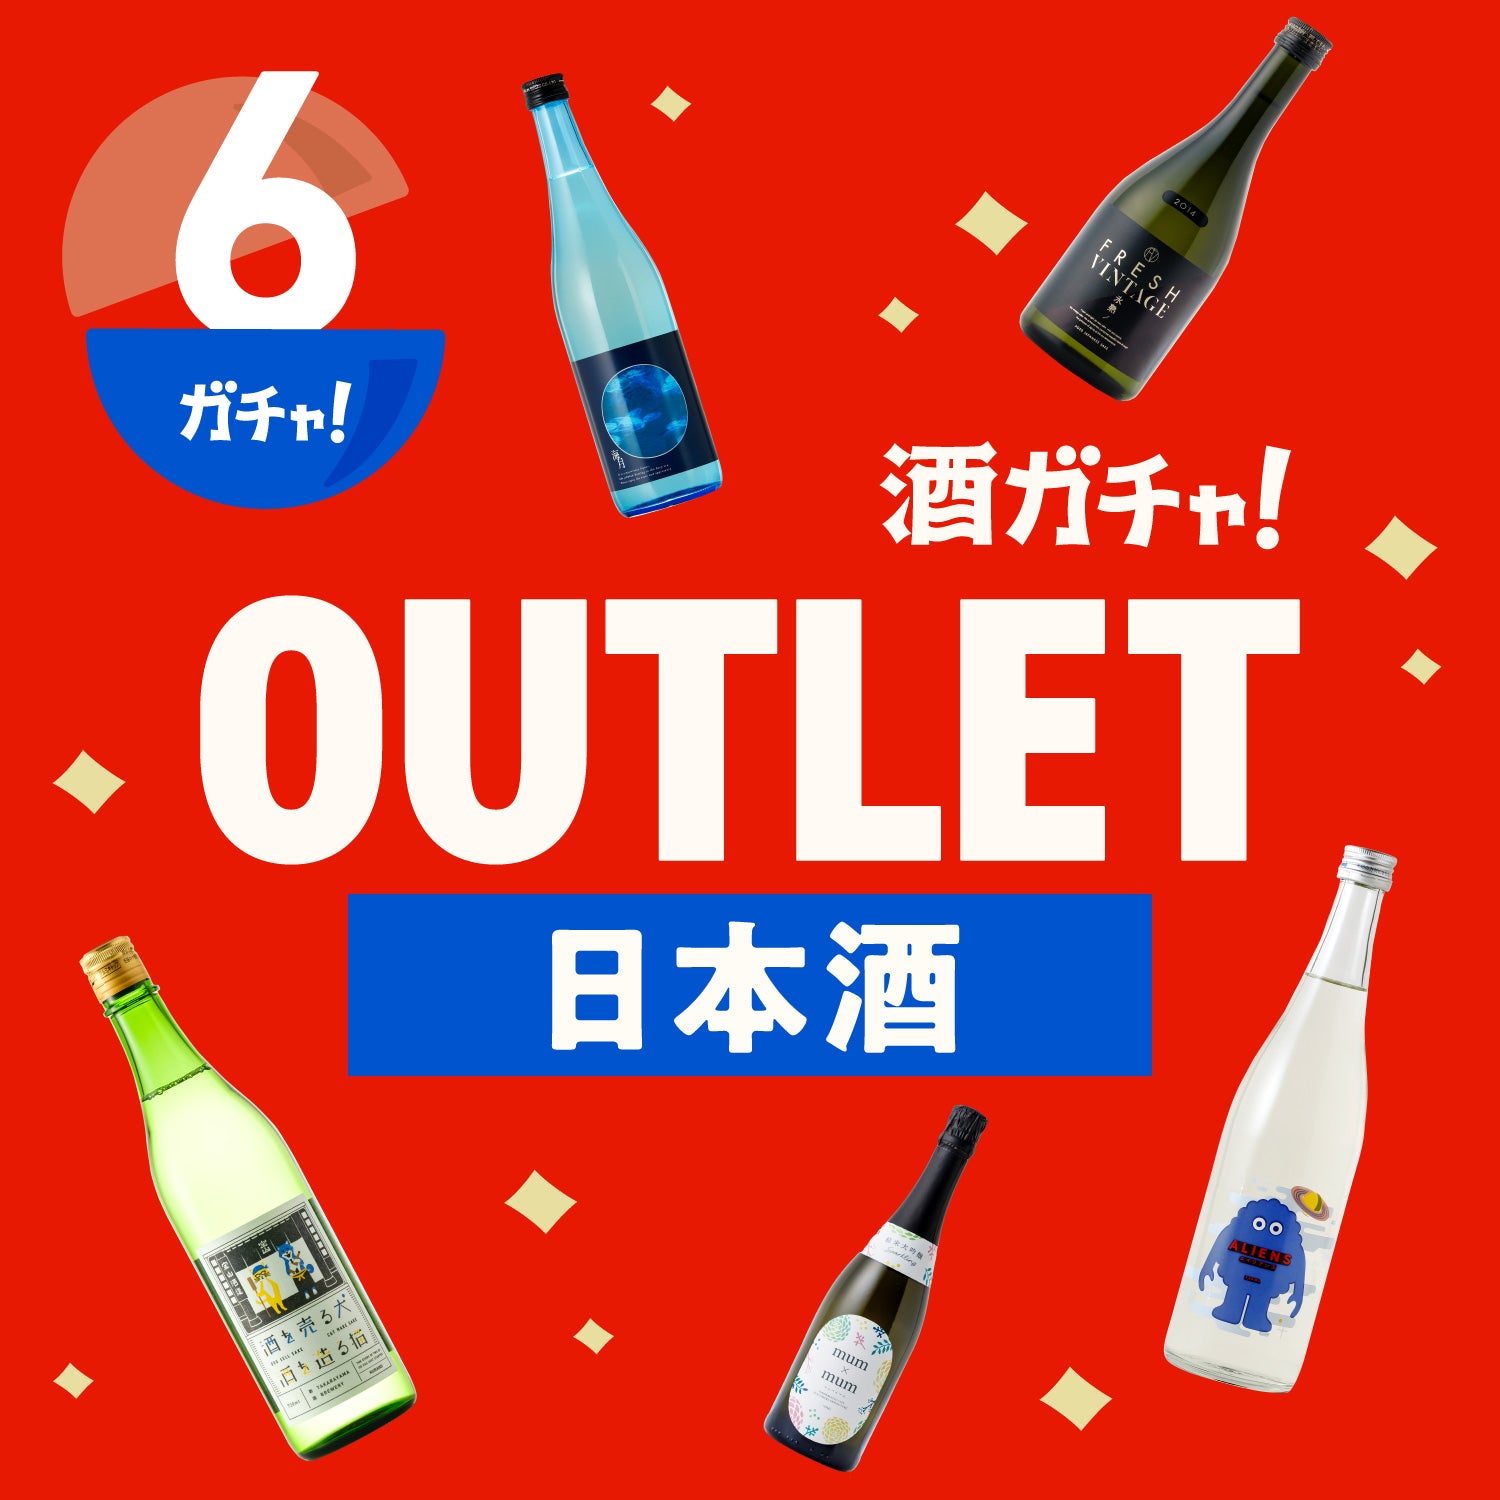 【6本】酒ガチャアウトレット -日本酒-